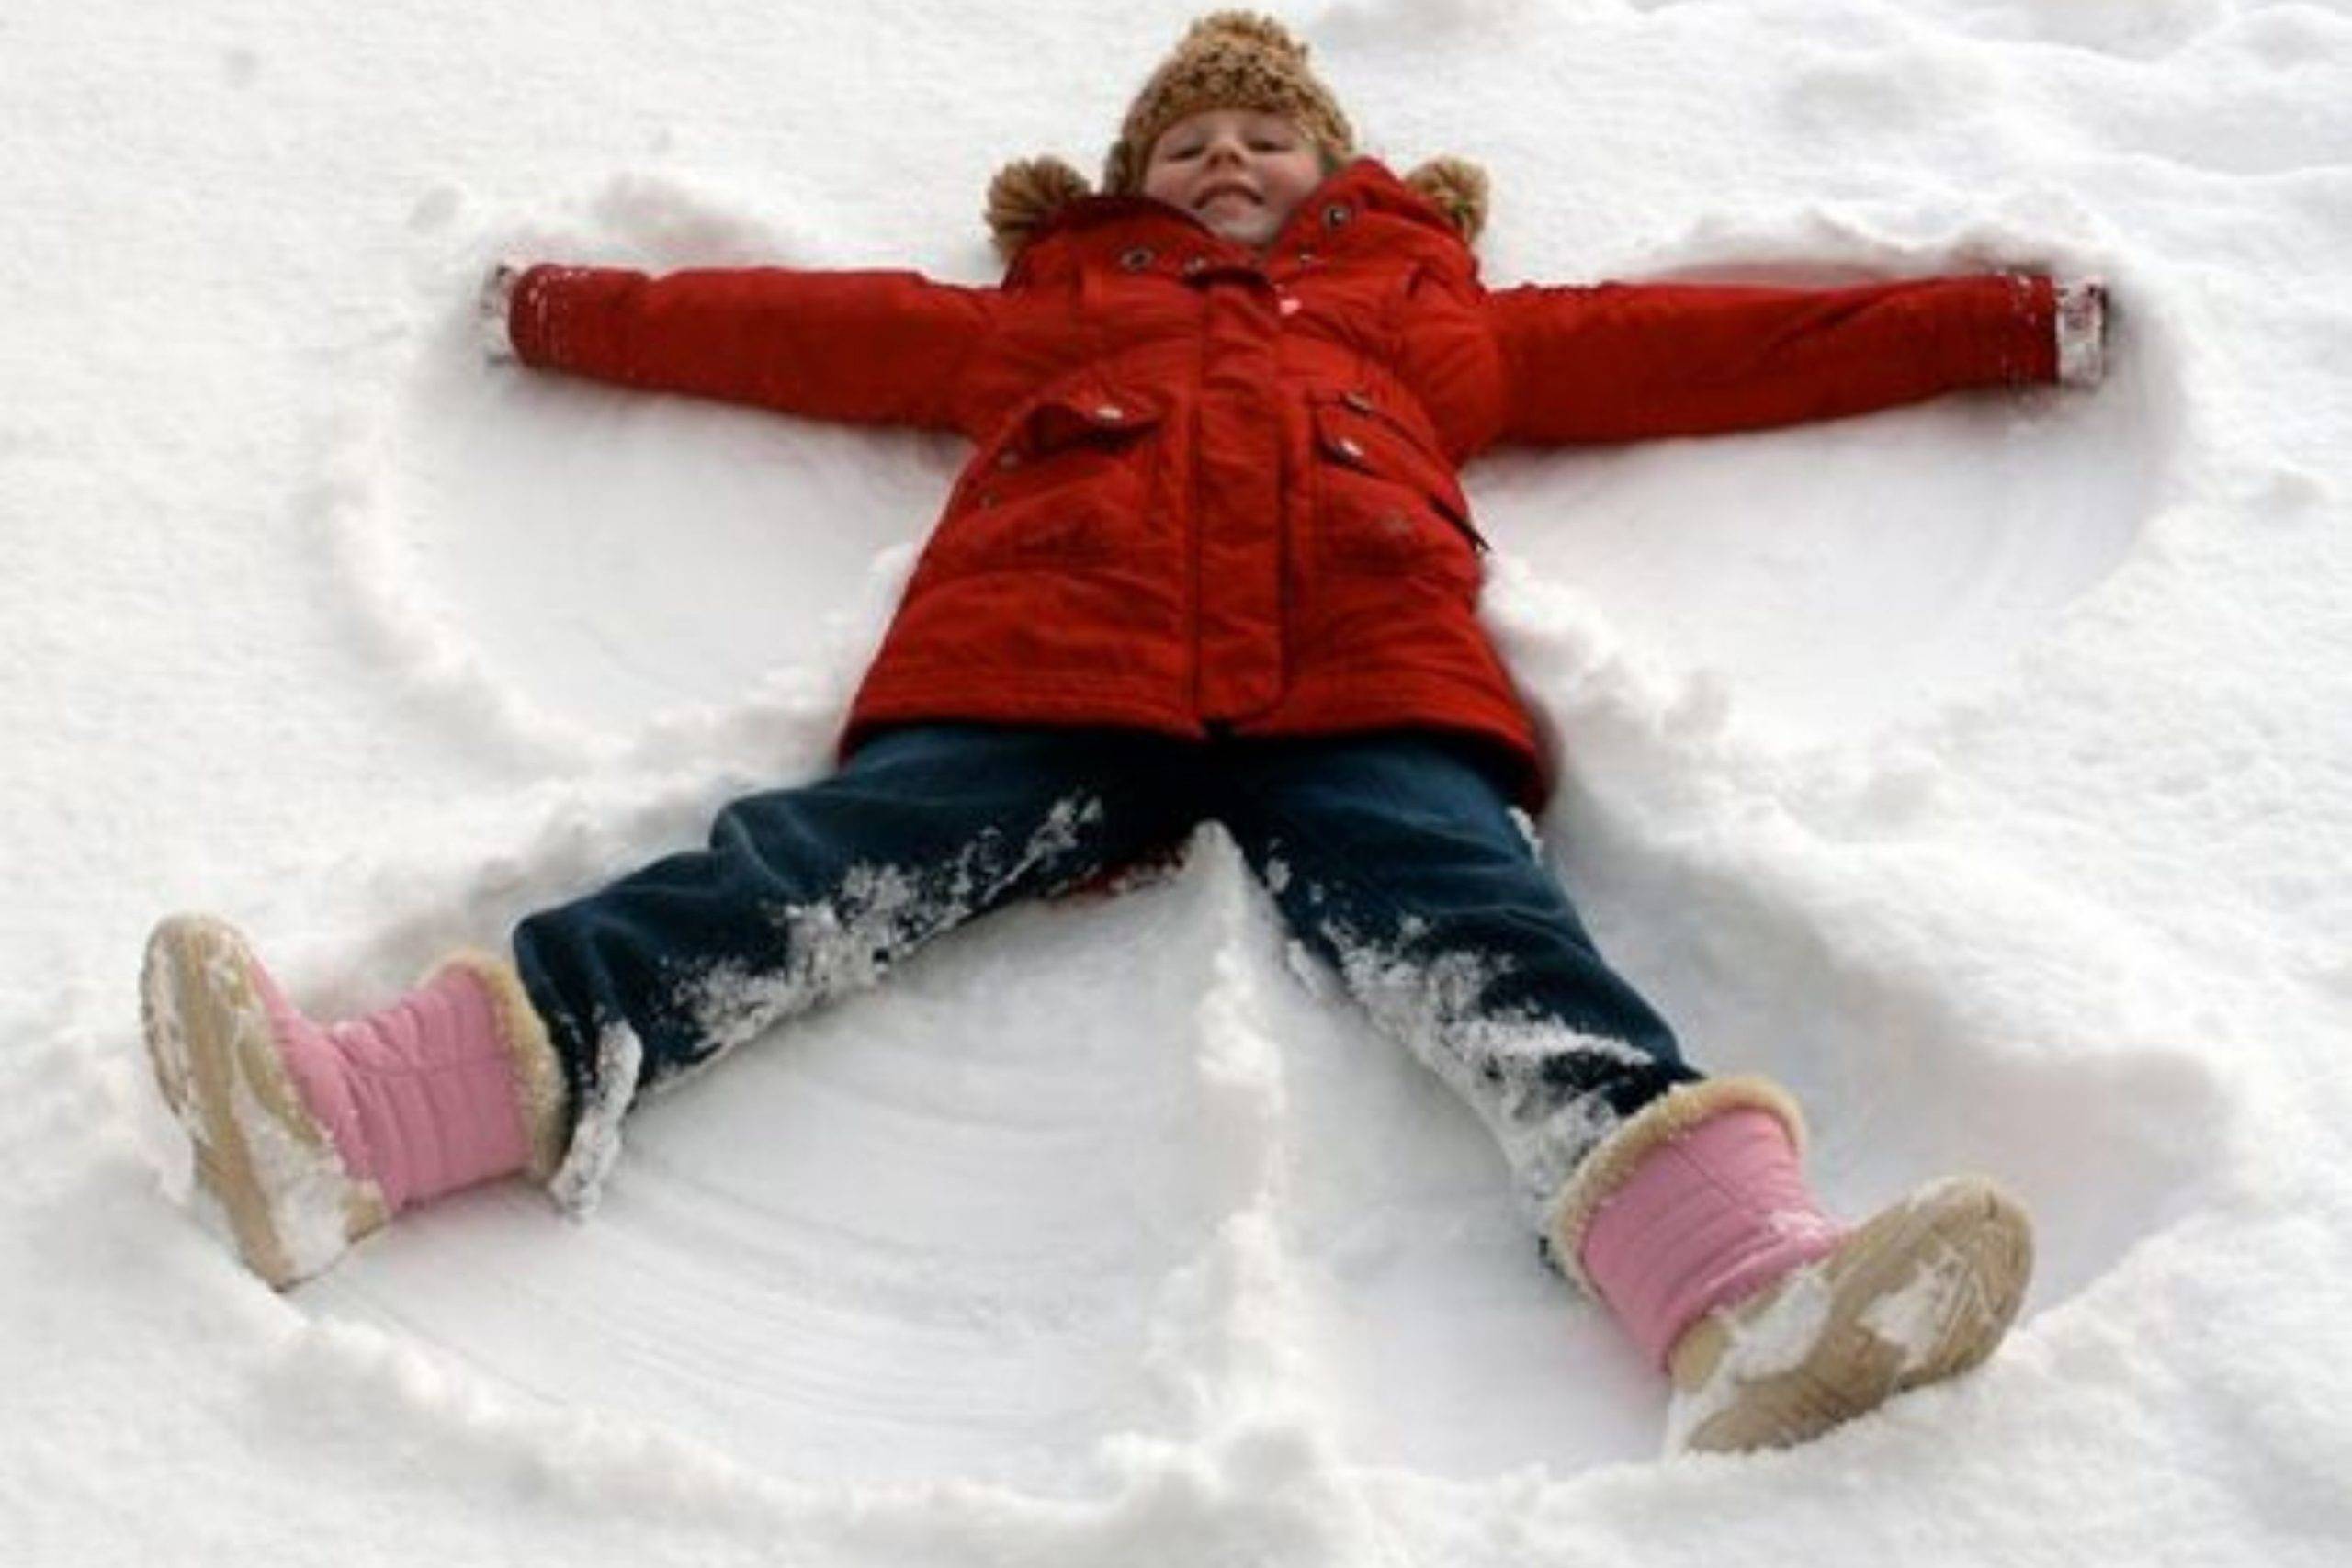  зимние игры и забавы для детей: какие бывают развлечения для дошкольников со снегом